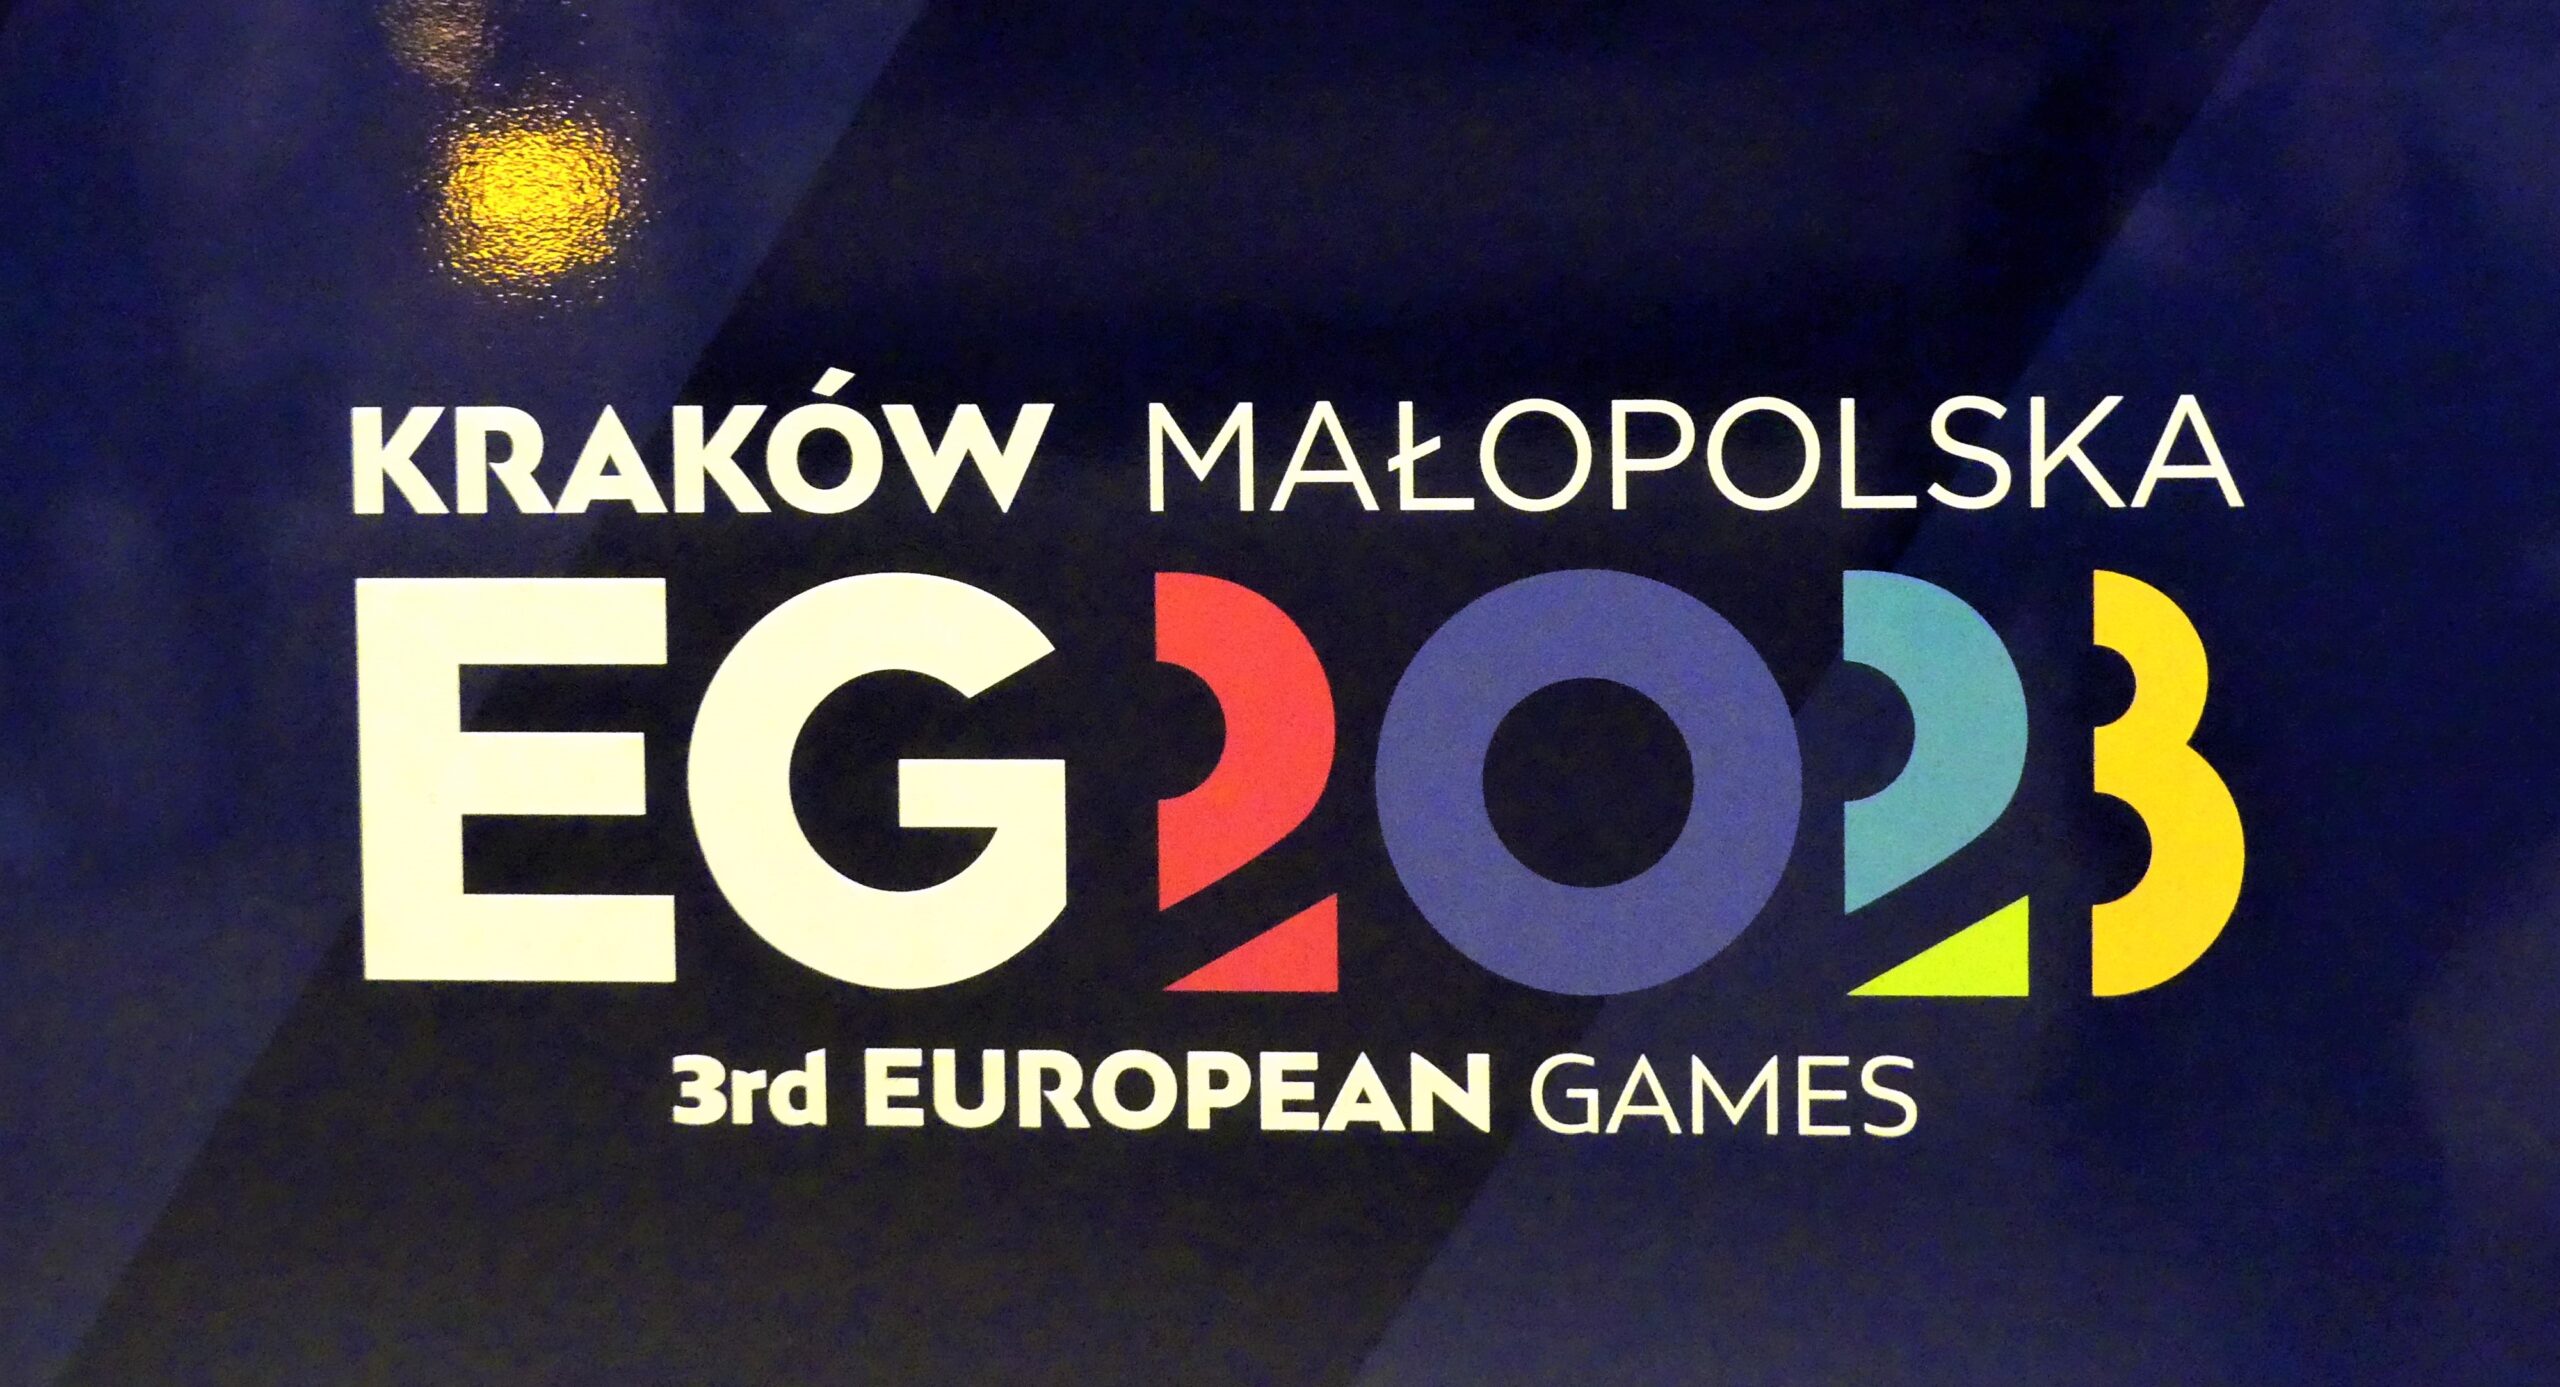 3rd European Games with Polish President 🇵🇱 #igrzyskaolimpijskie2023  #polishpresident #polska #prezydent #andrzejduda #europeangames2023